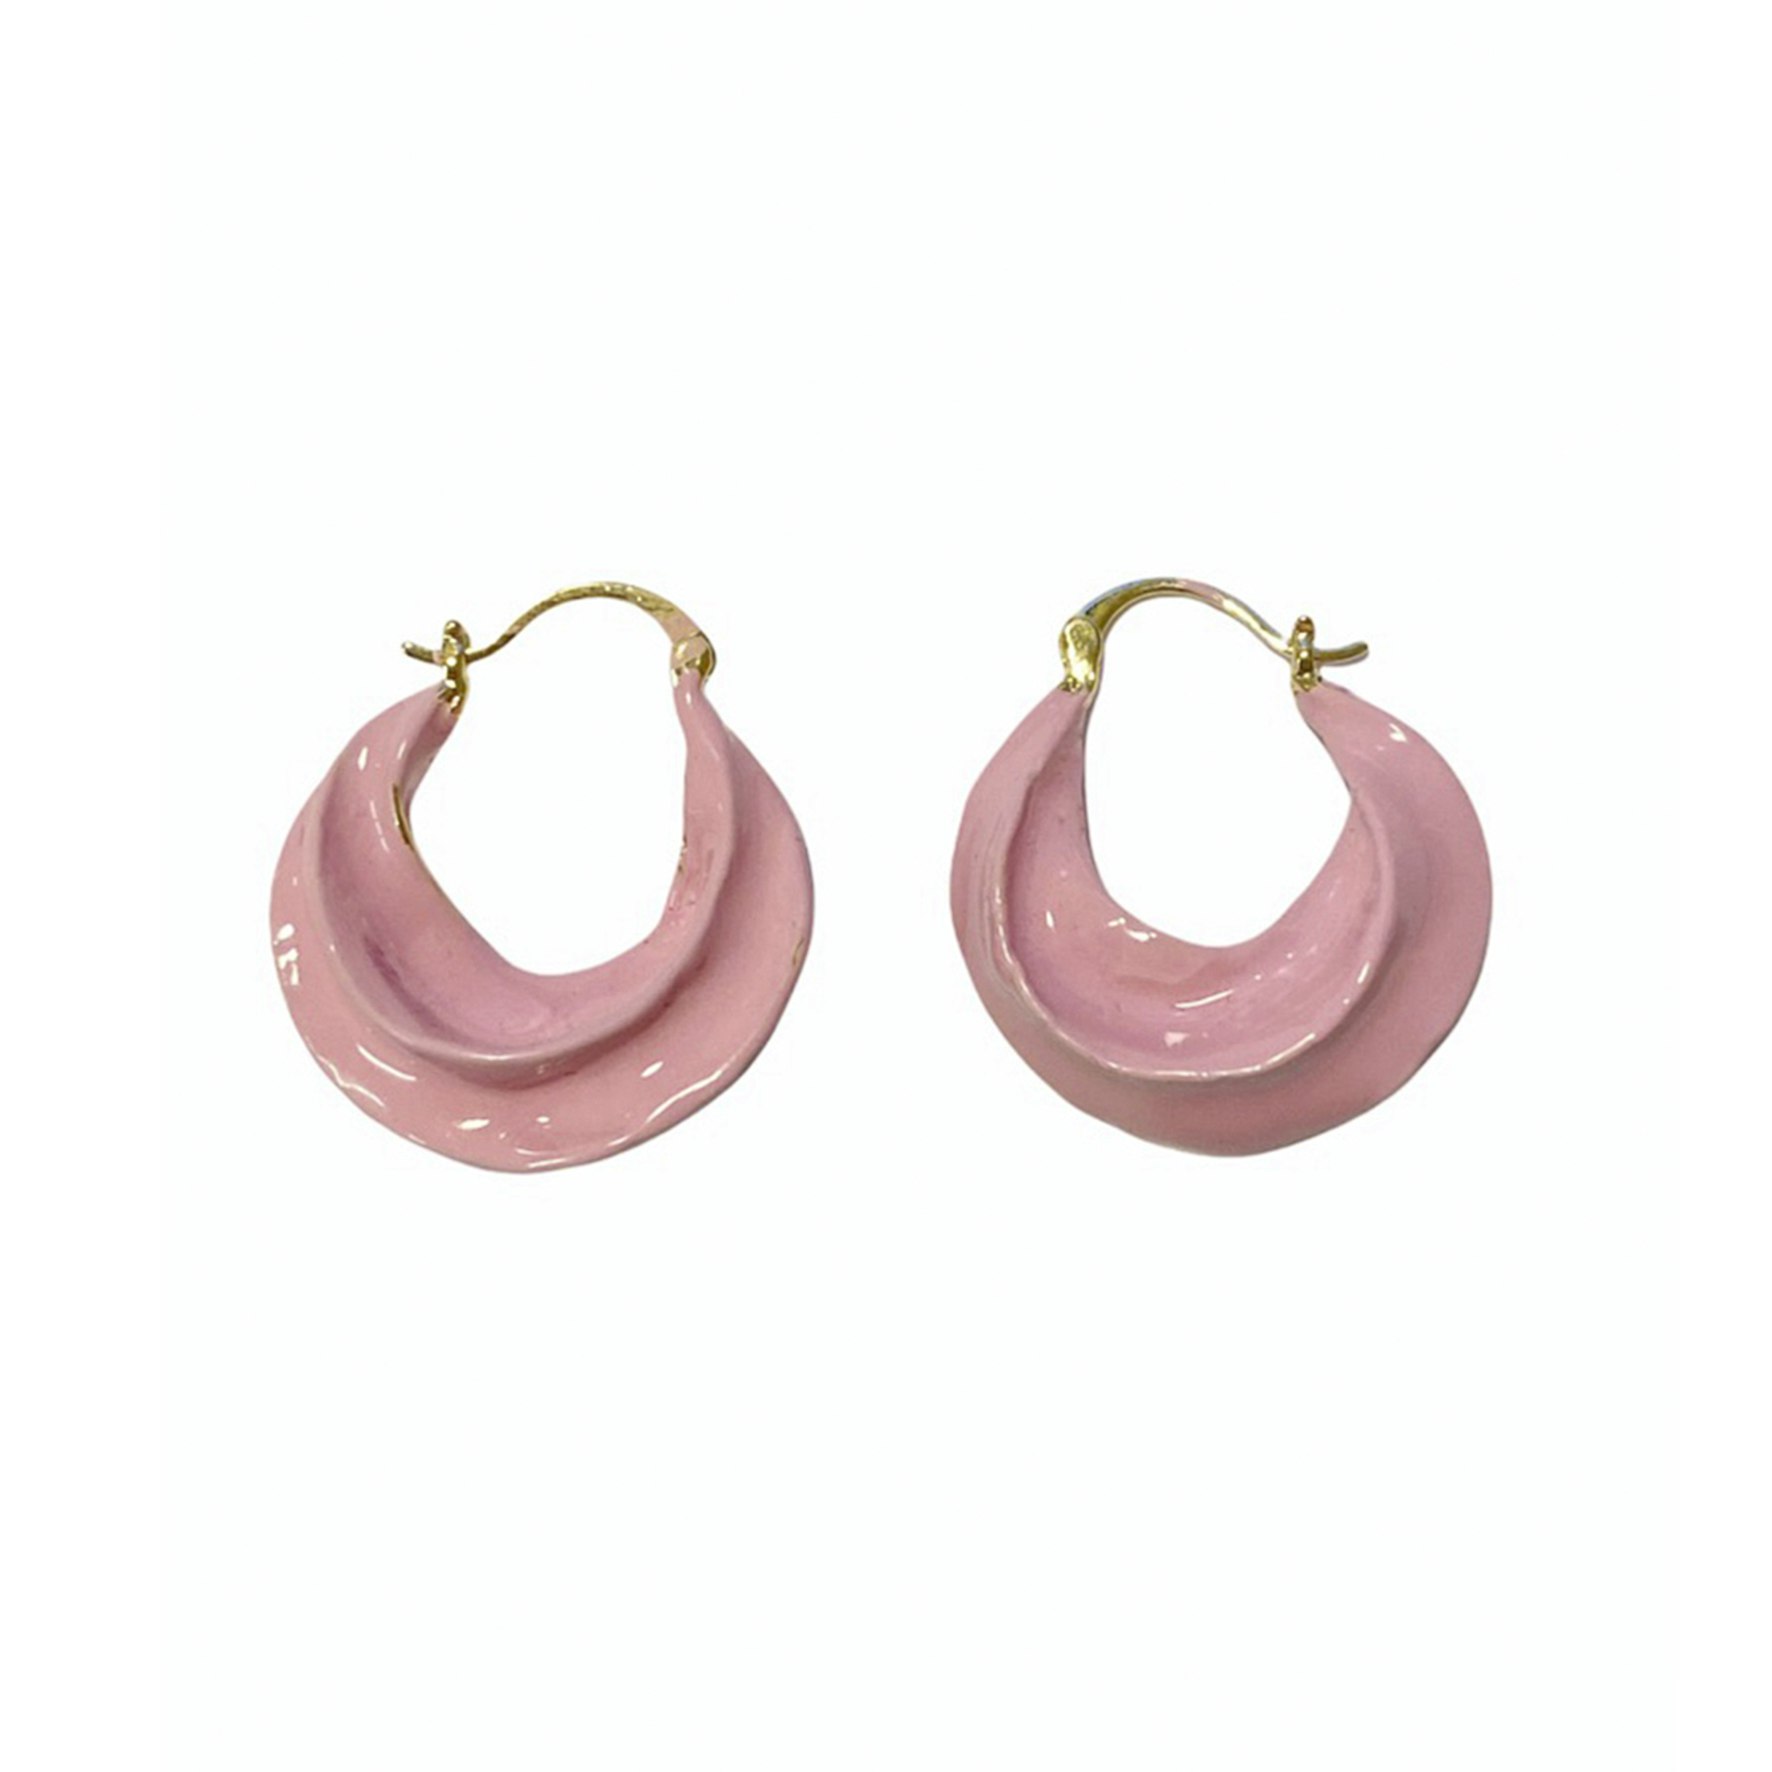 Africa Enamel Earrings Baby Pink van Pico in Verguld messing